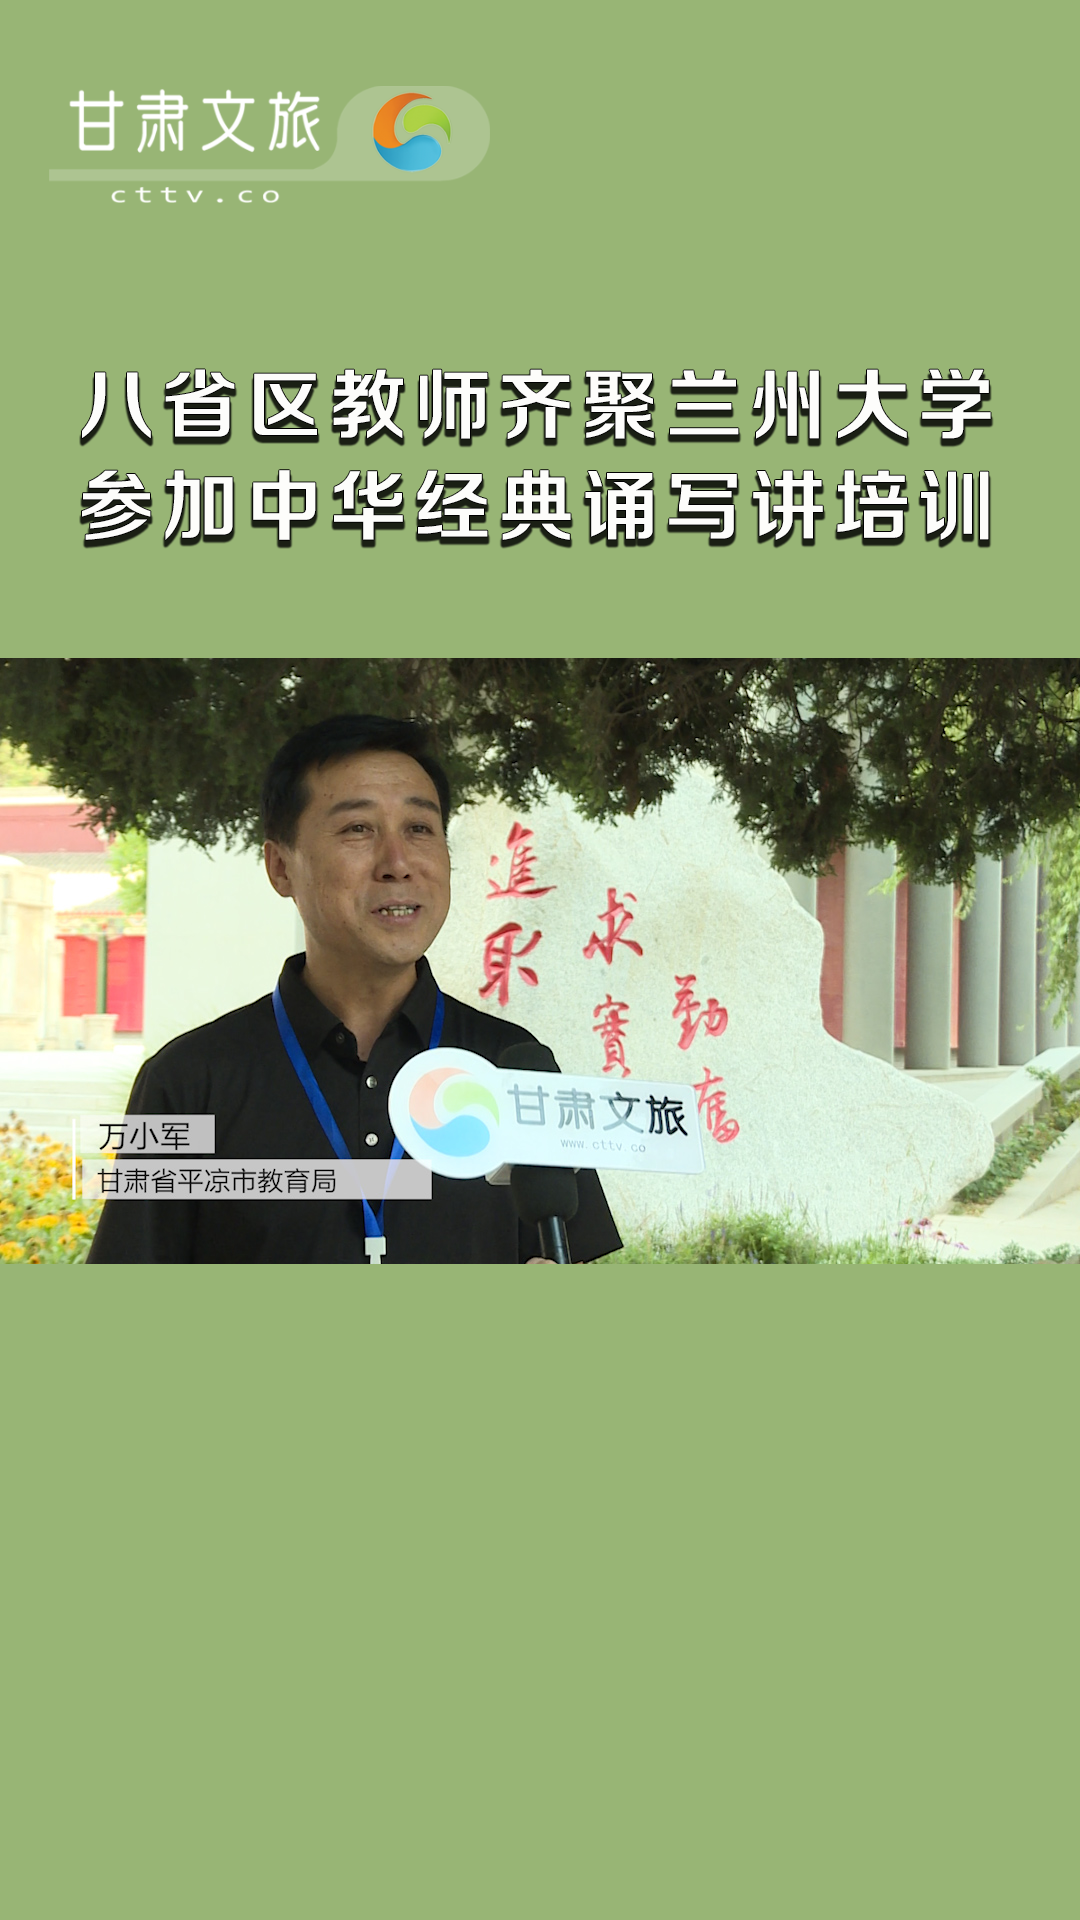 八省區教師齊聚蘭州大學參加中華經典誦寫講培訓